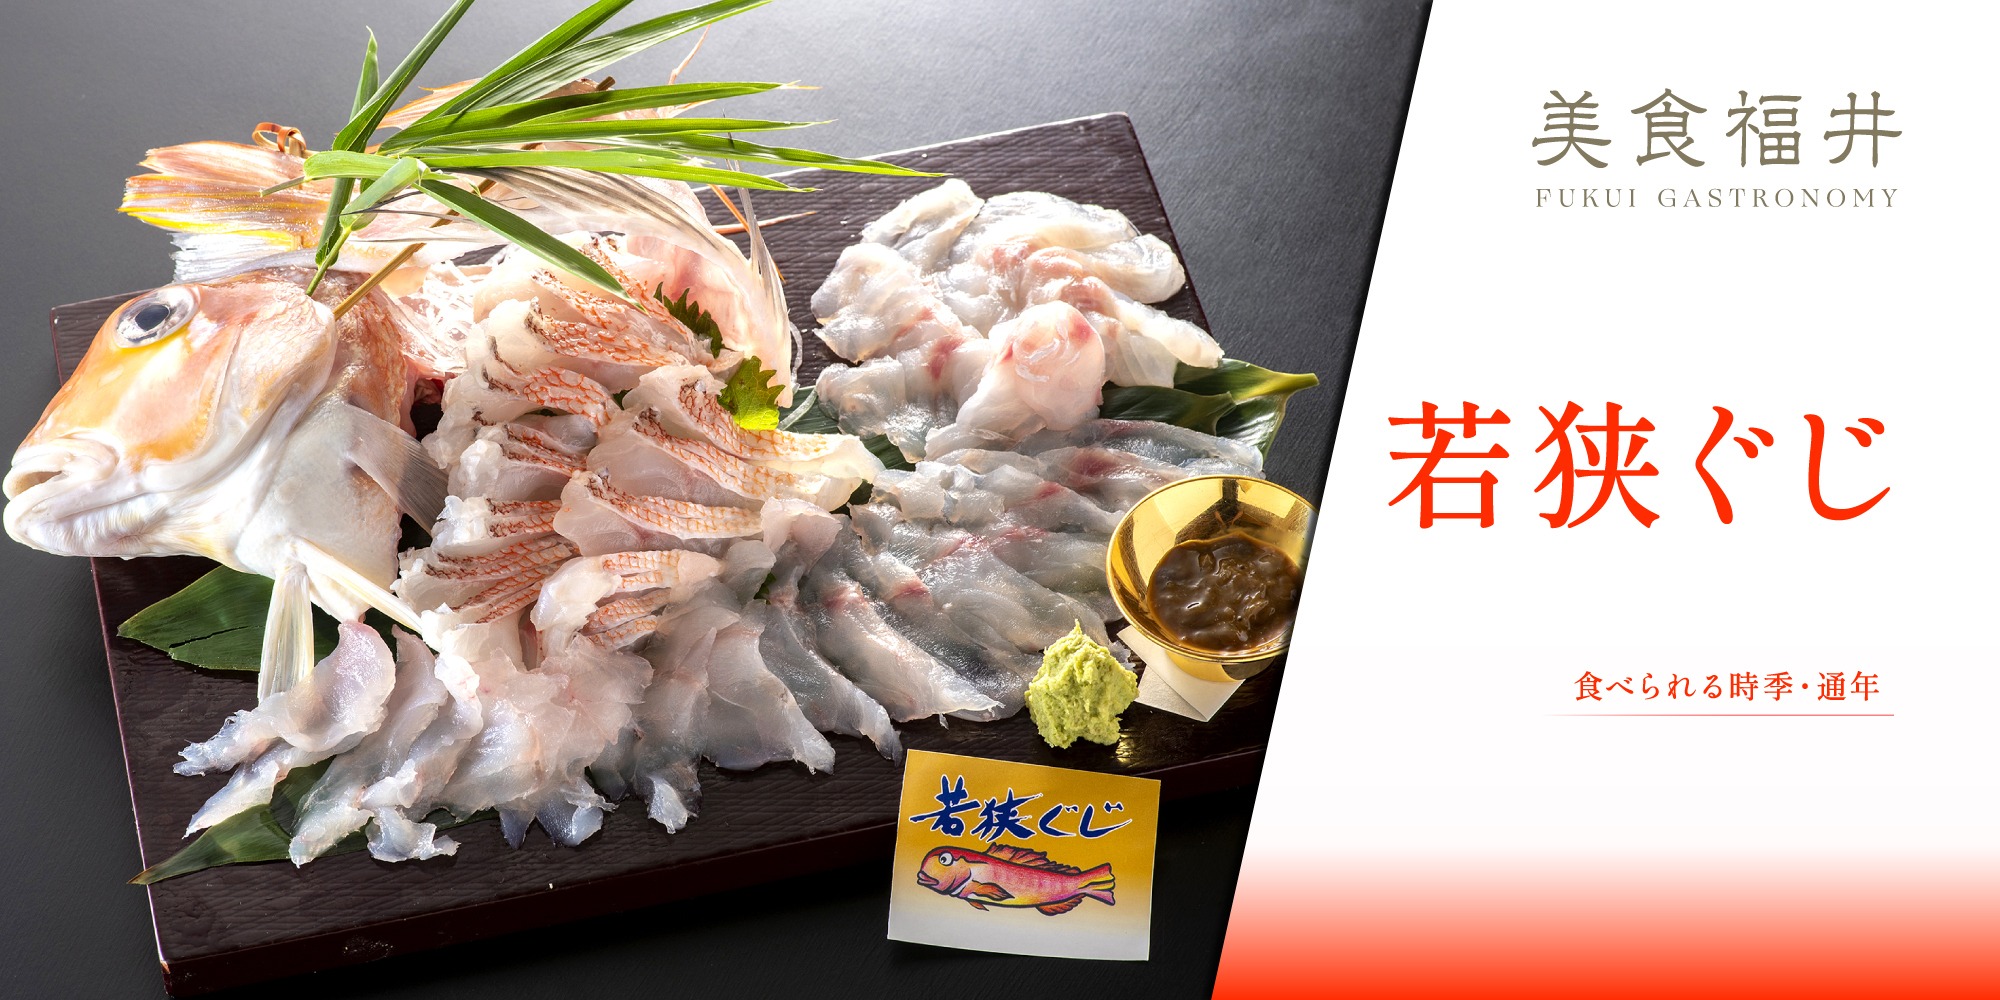 【美食福井】御食国を代表する「若狭ぐじ」は、京料理の主役を務める雅な魚